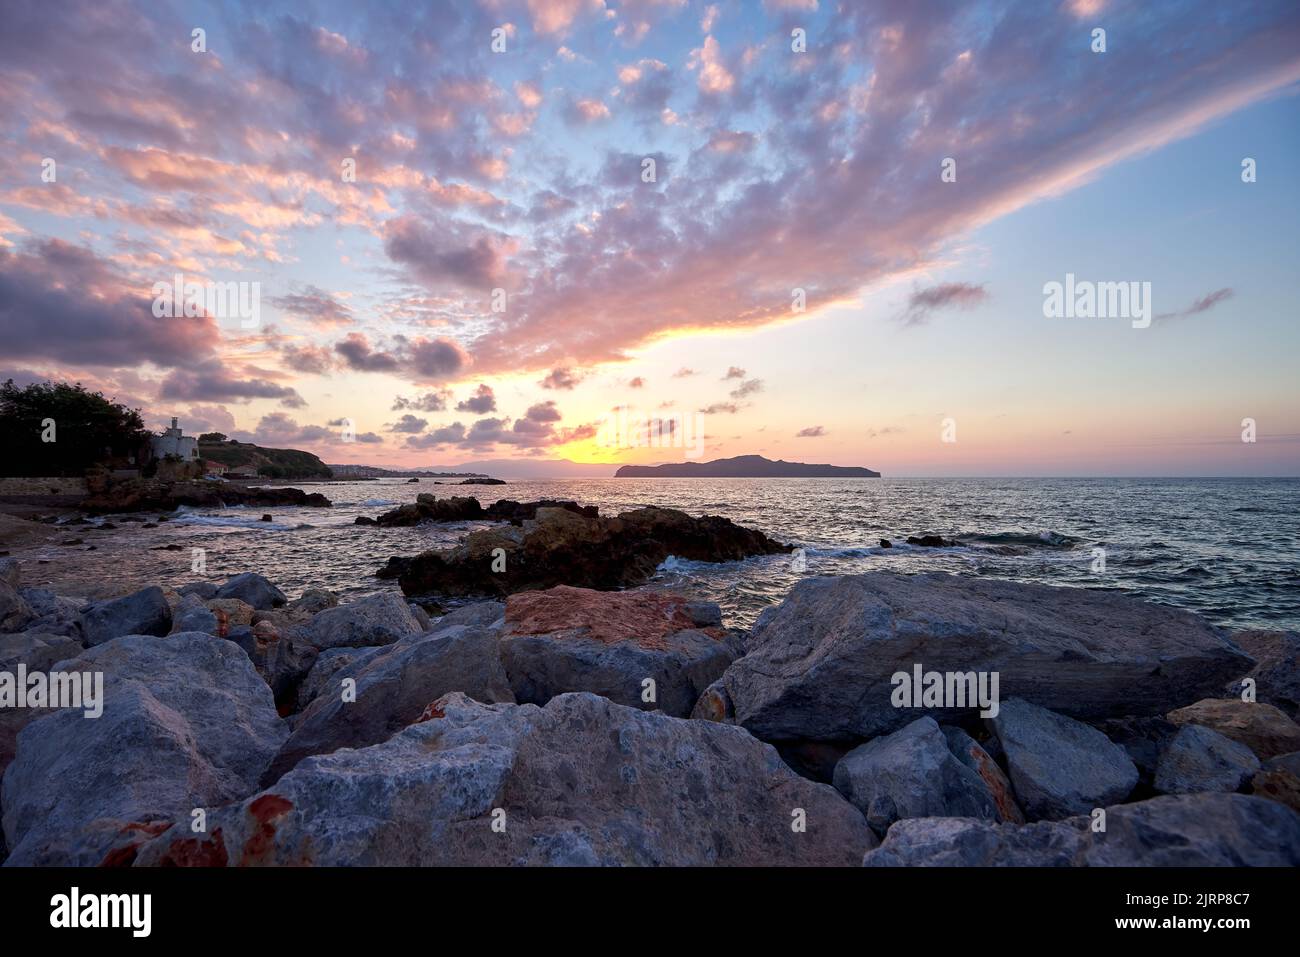 Belle mer au coucher du soleil à Chania Crète - Grèce Banque D'Images